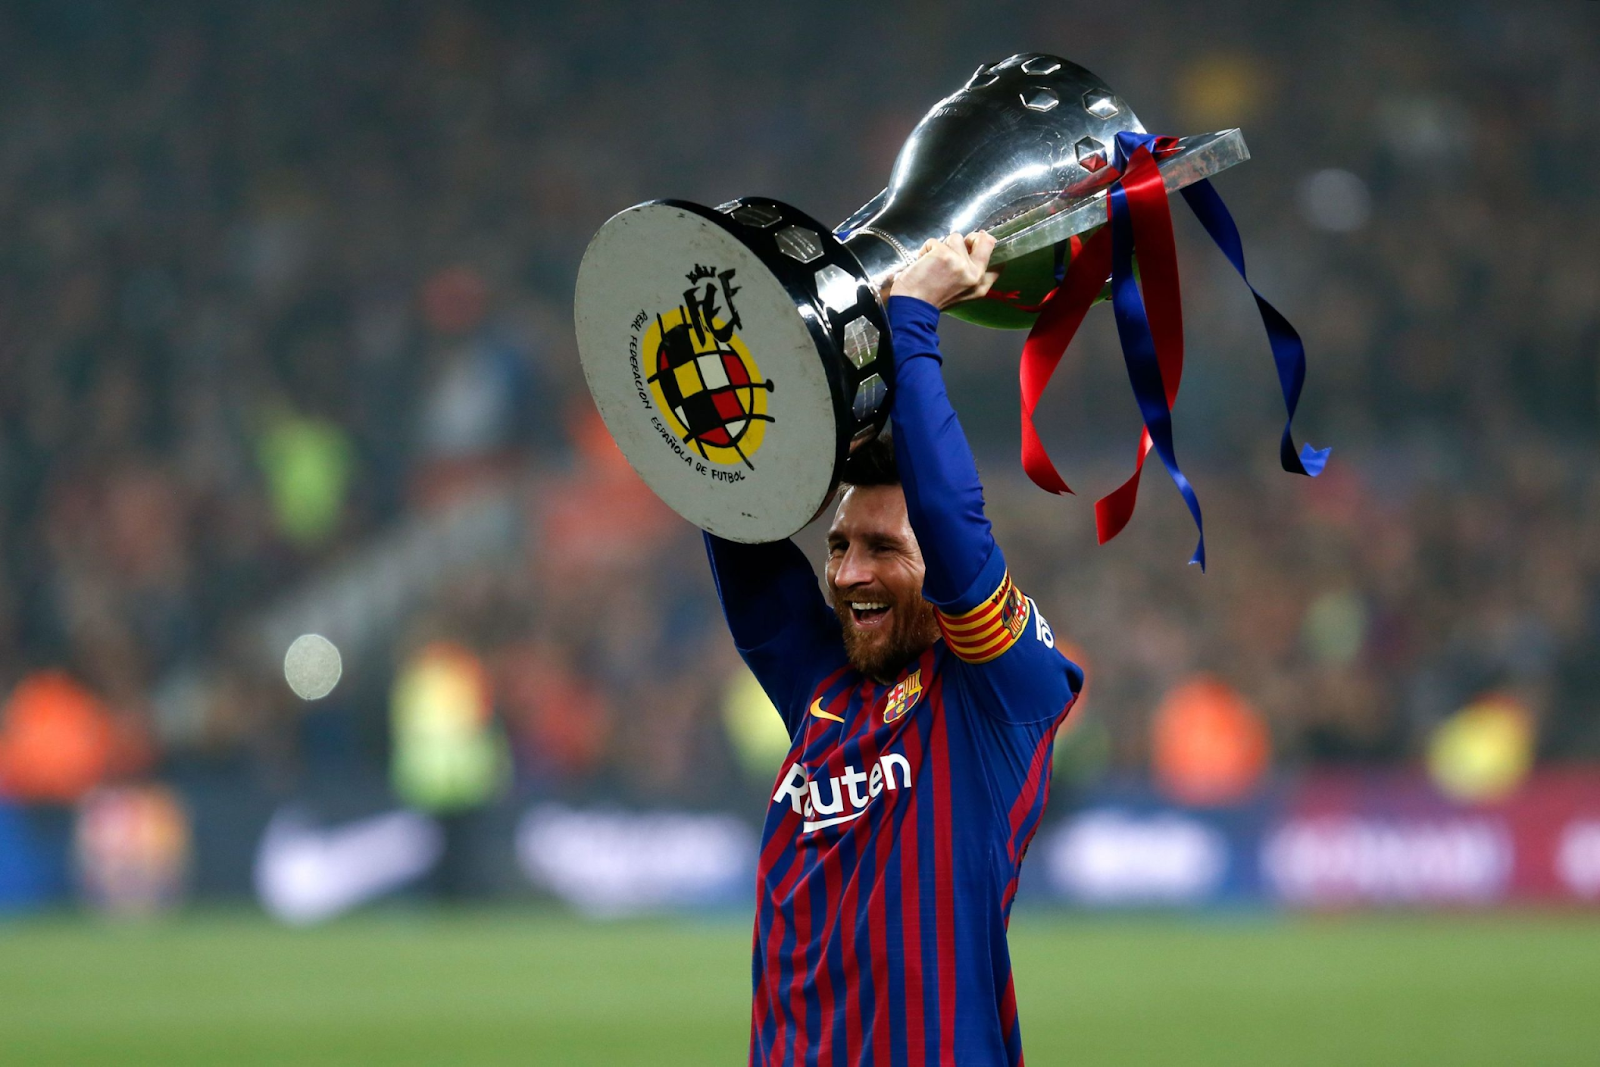 Cầu thủ ghi bàn nhiều nhất bóng đá Tây Ban Nha - Messi